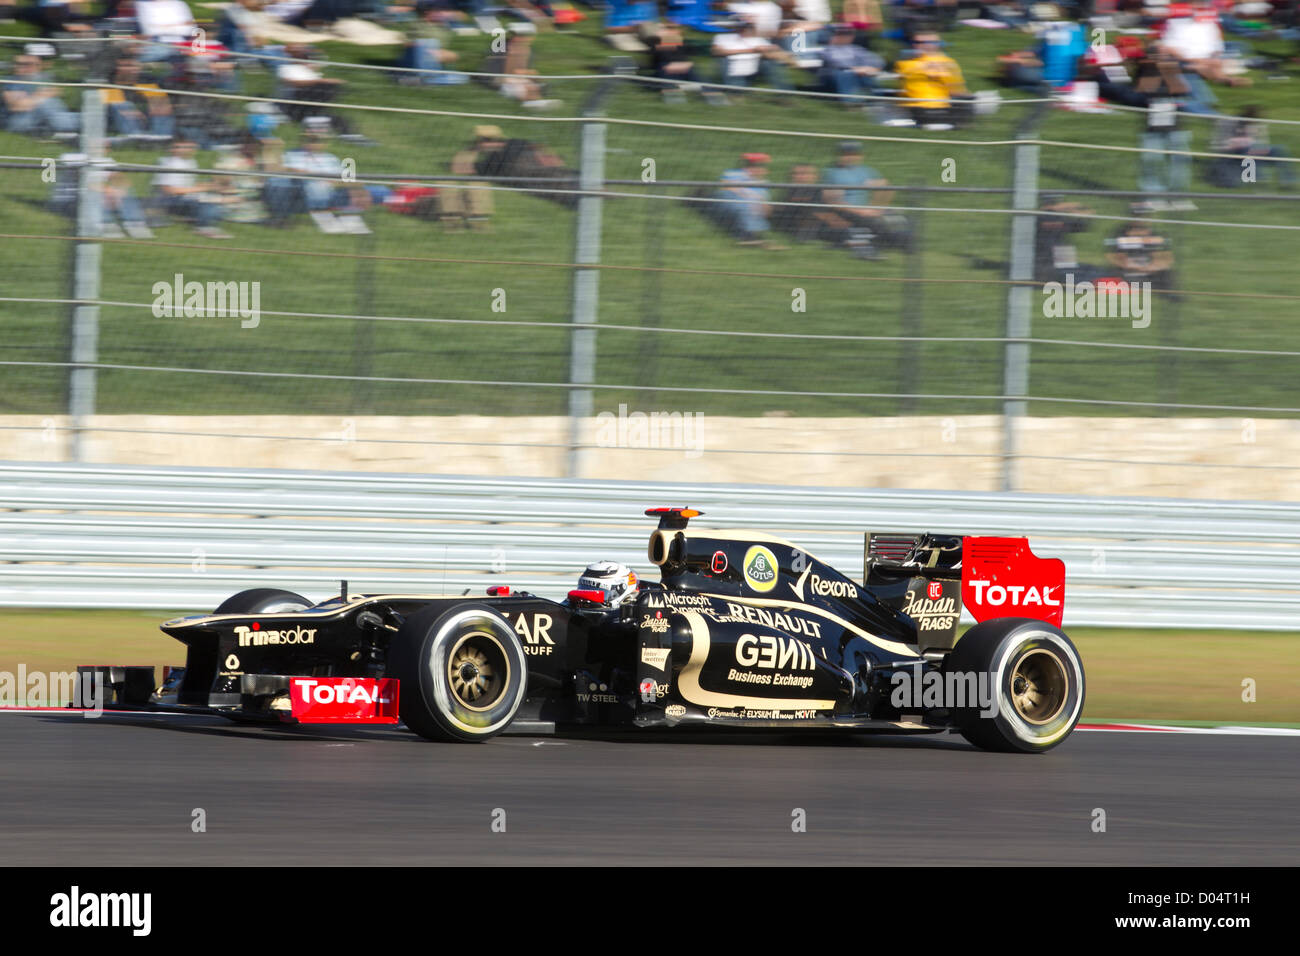 Kimi Raikkonen maneja Lotus su coche de F1 durante los entrenamientos para el Gran Premio de Estados Unidos en el circuito de las Américas Foto de stock